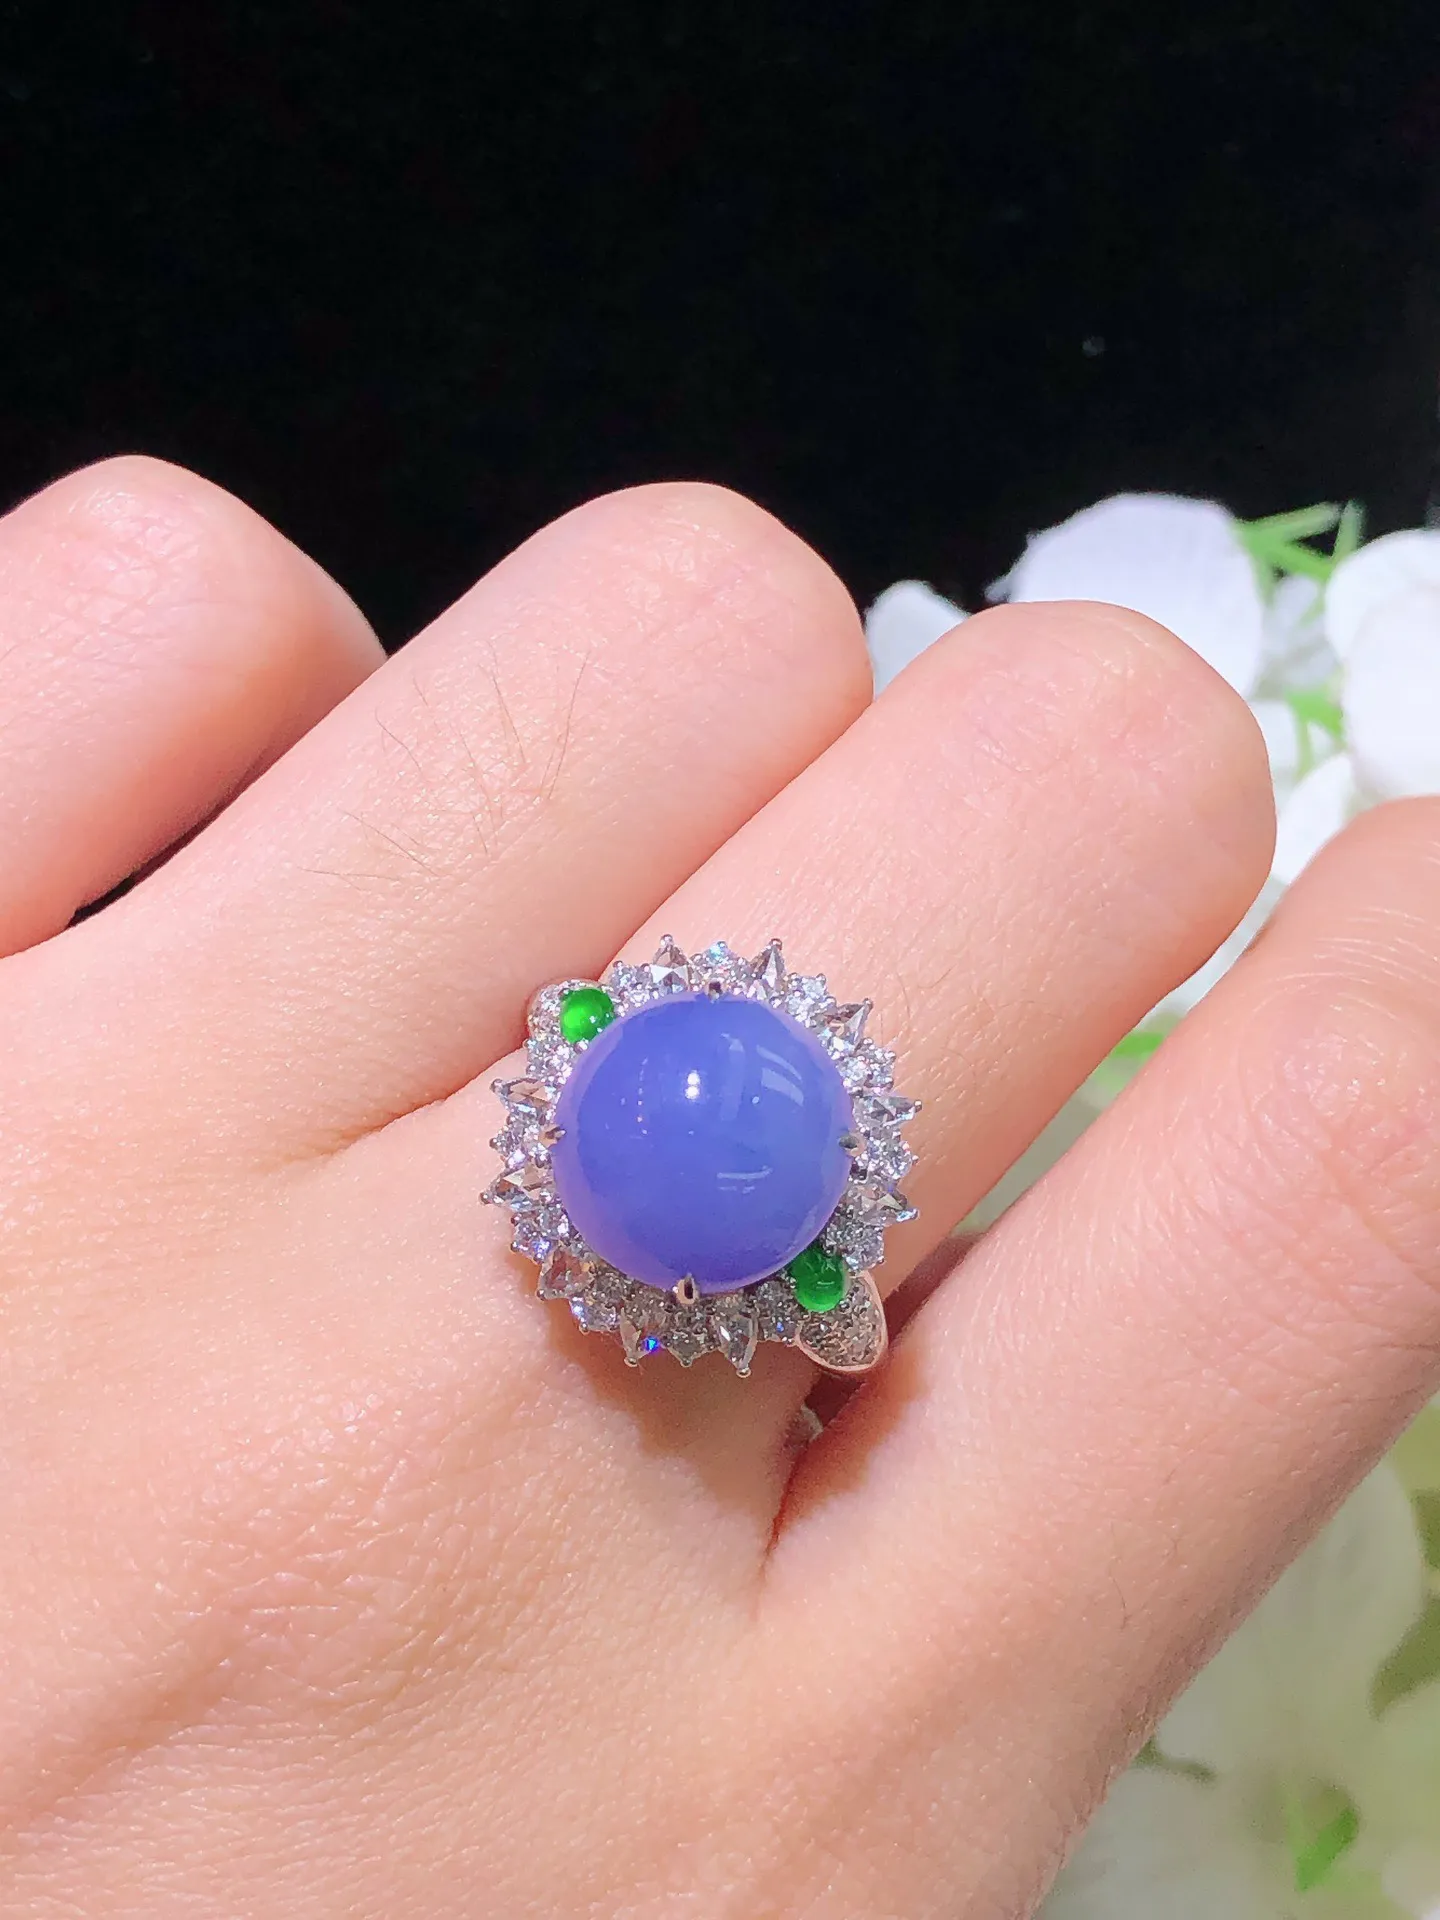 翡翠紫罗兰蛋面戒指 雕工精湛 颜色鲜艳 冰透水润